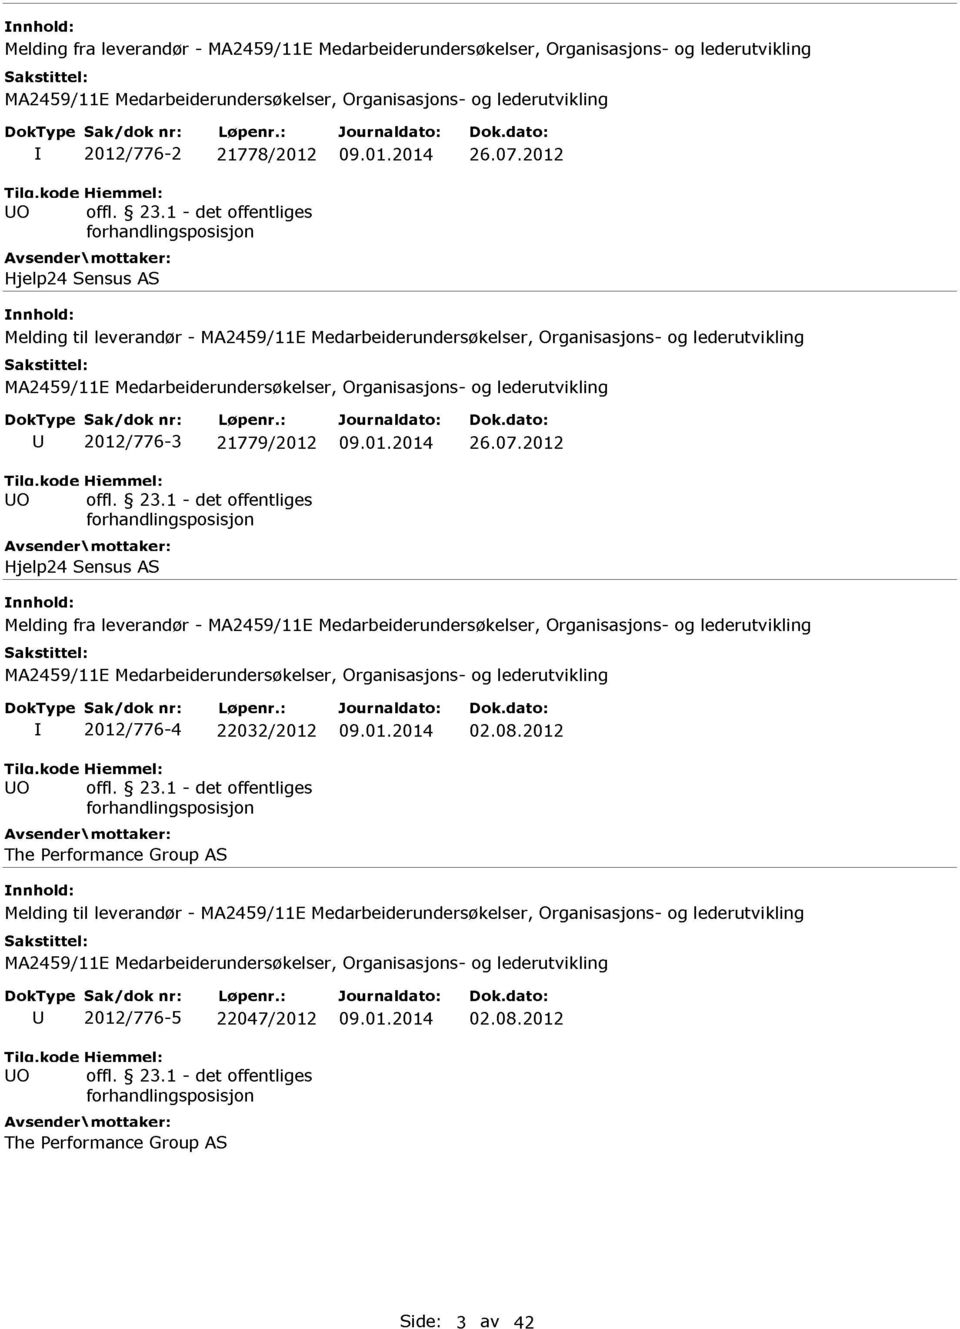 2012 Avsender Hjelp24 mottaker: Sensus AS Melding fra leverandør - I 2012/776-4 22032/2012 09.01.2014 02.